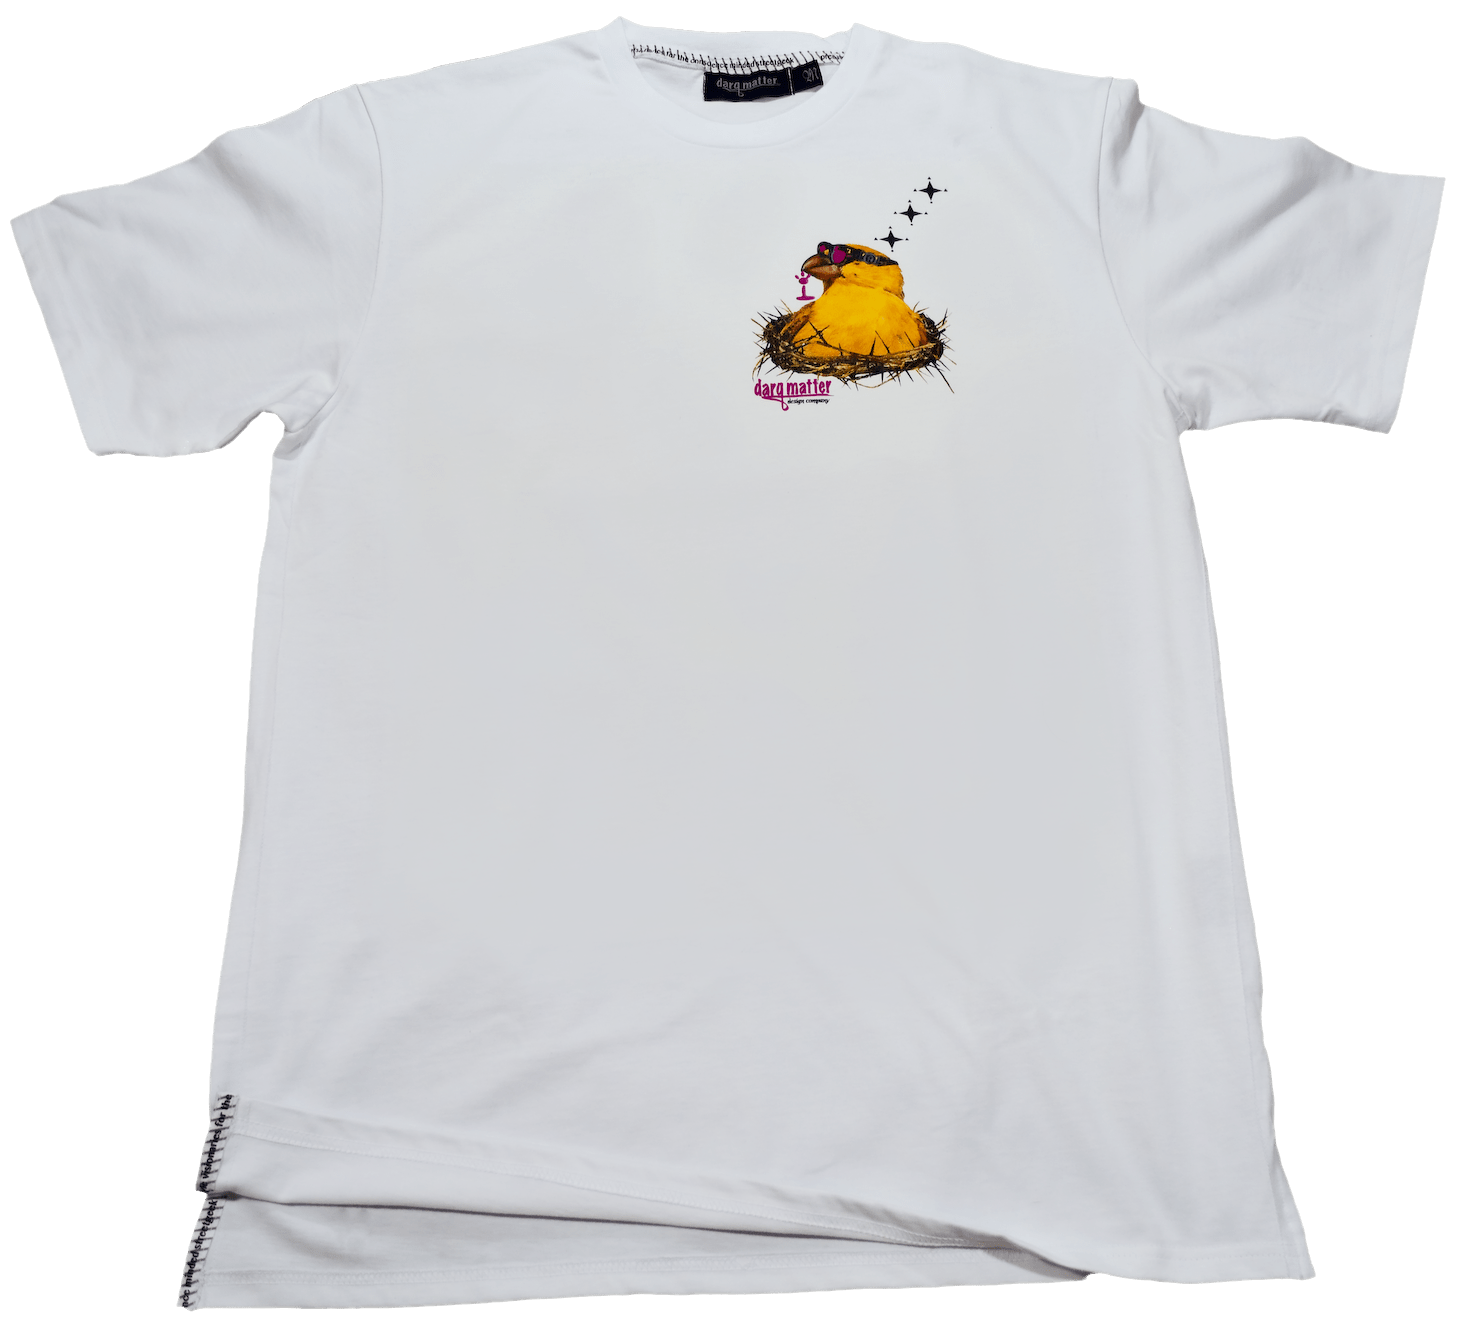 DarqMatterDesign CutnSew T-Shirts Small / White BilderBerd